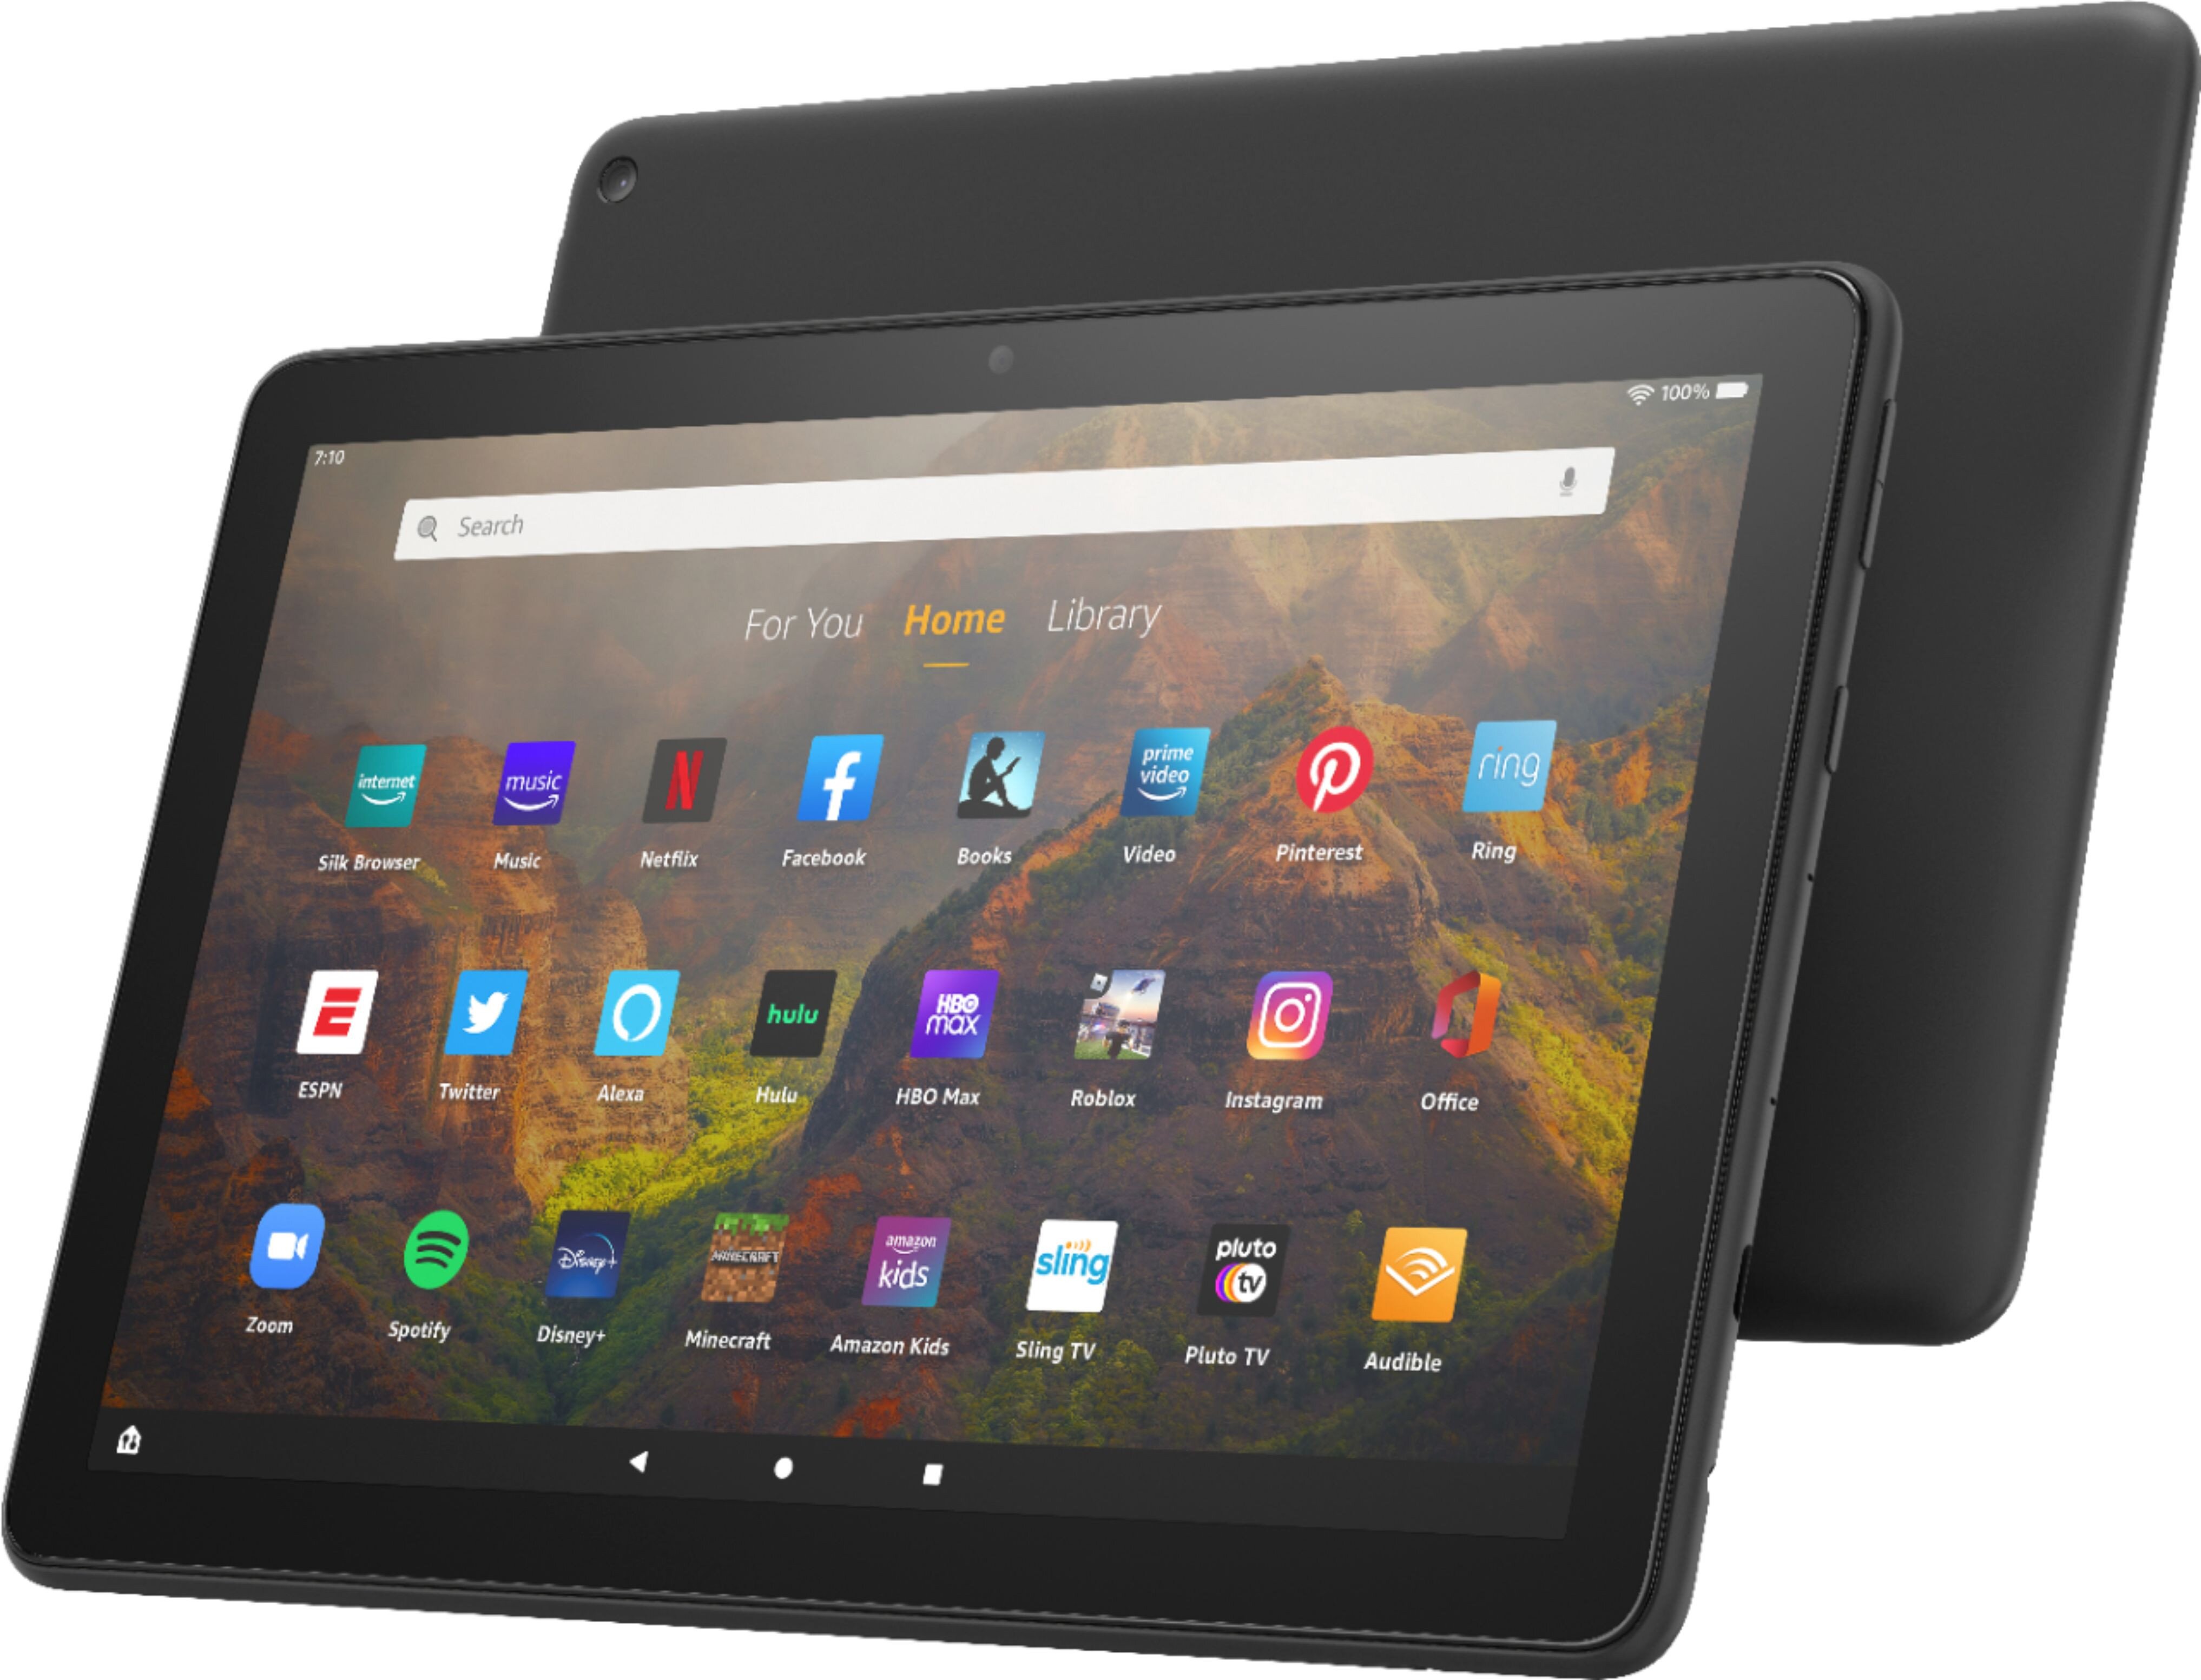 Amazon 11th Gen All New Fire Hd 10 Tablet 10.1 1080p Full Hd Display   Black   25tejar 4 